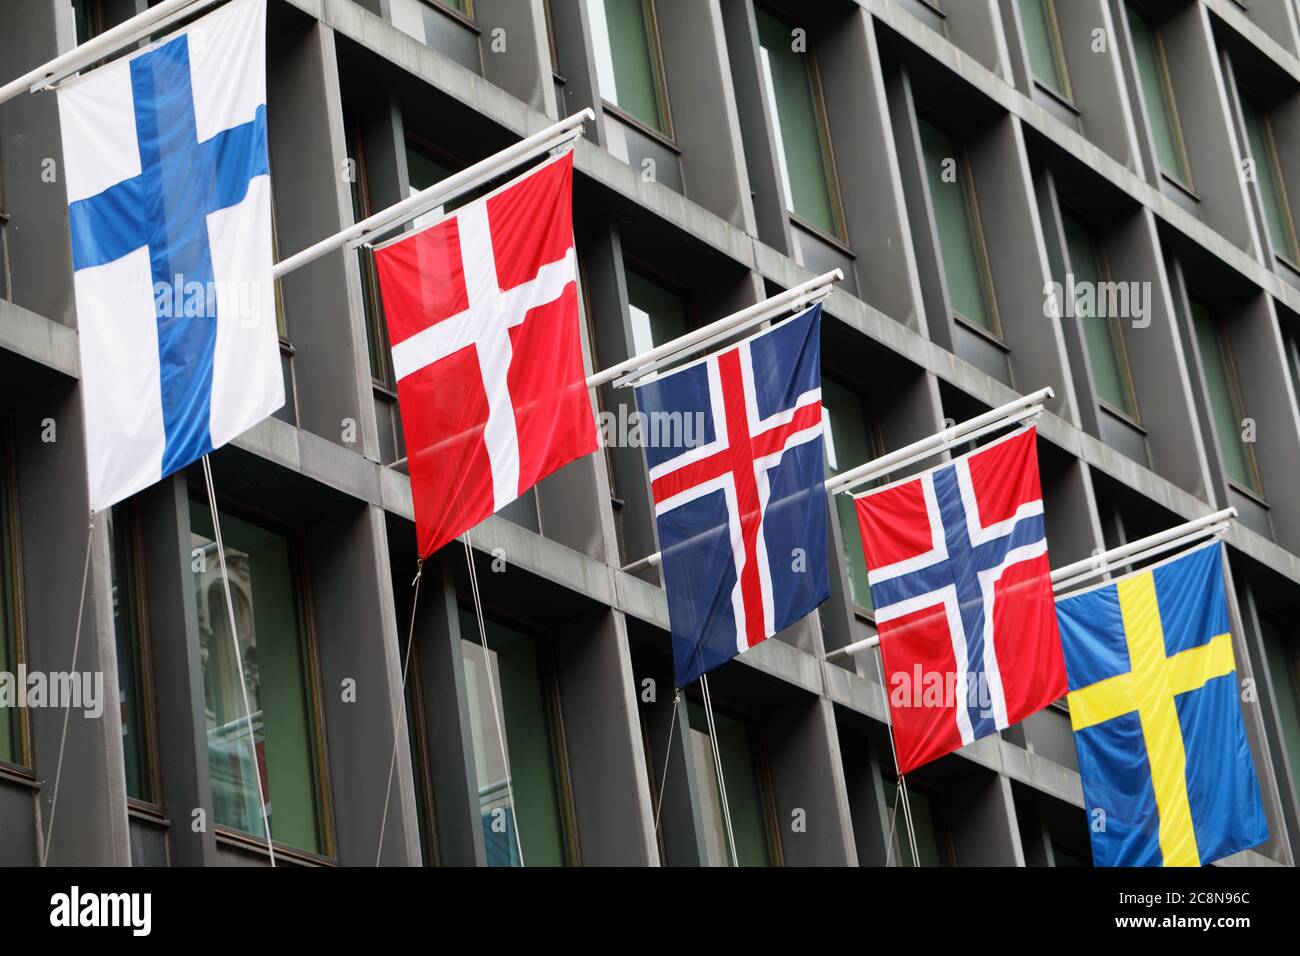 Nordische Flaggen auf dem Hotel Kamp in Helsinki, Finnland. Flaggen von links: Finnland, Dänemark, Island, Norwegen, Schweden Stockfoto